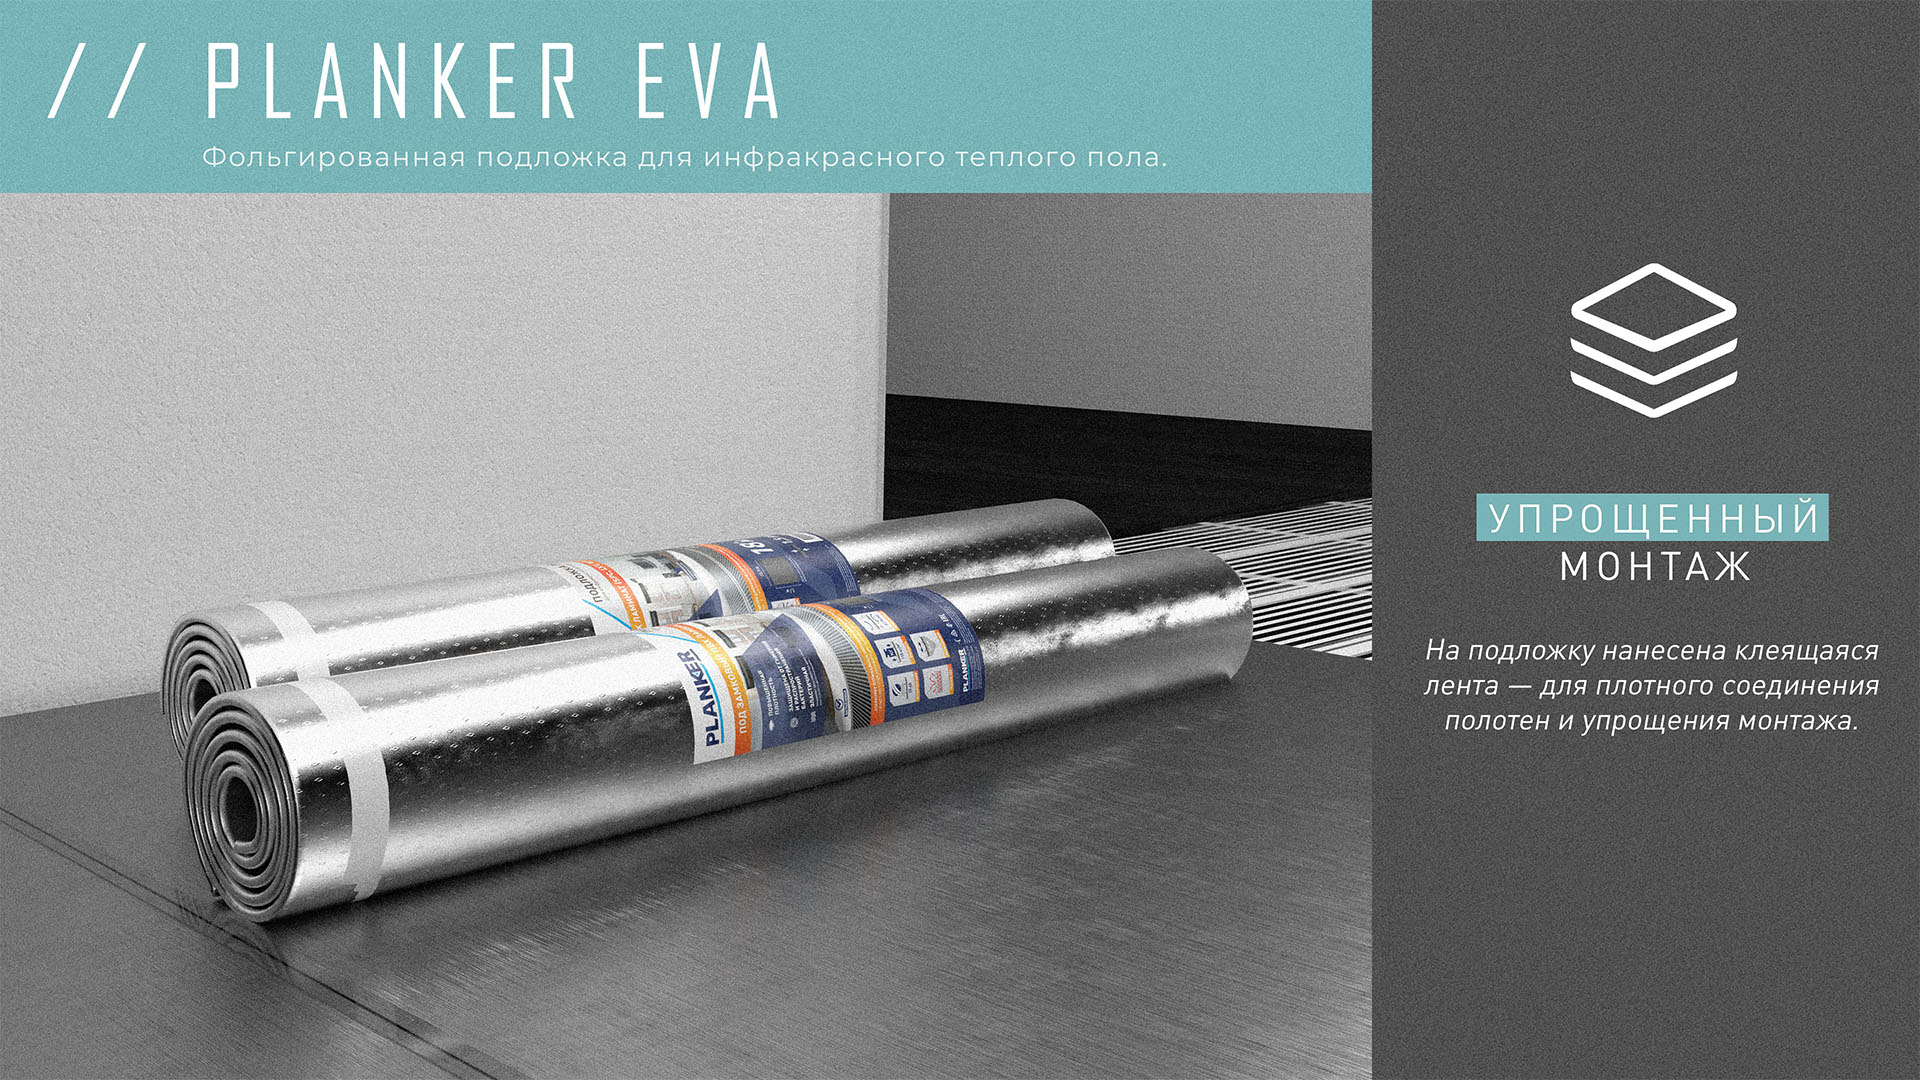 Подложка эва. Planker подложка 1.5 мм Eva. Огромный рулон фольги. Подложка planker Eva для инфракрасного теплого. Пирамида рулонов фольги.